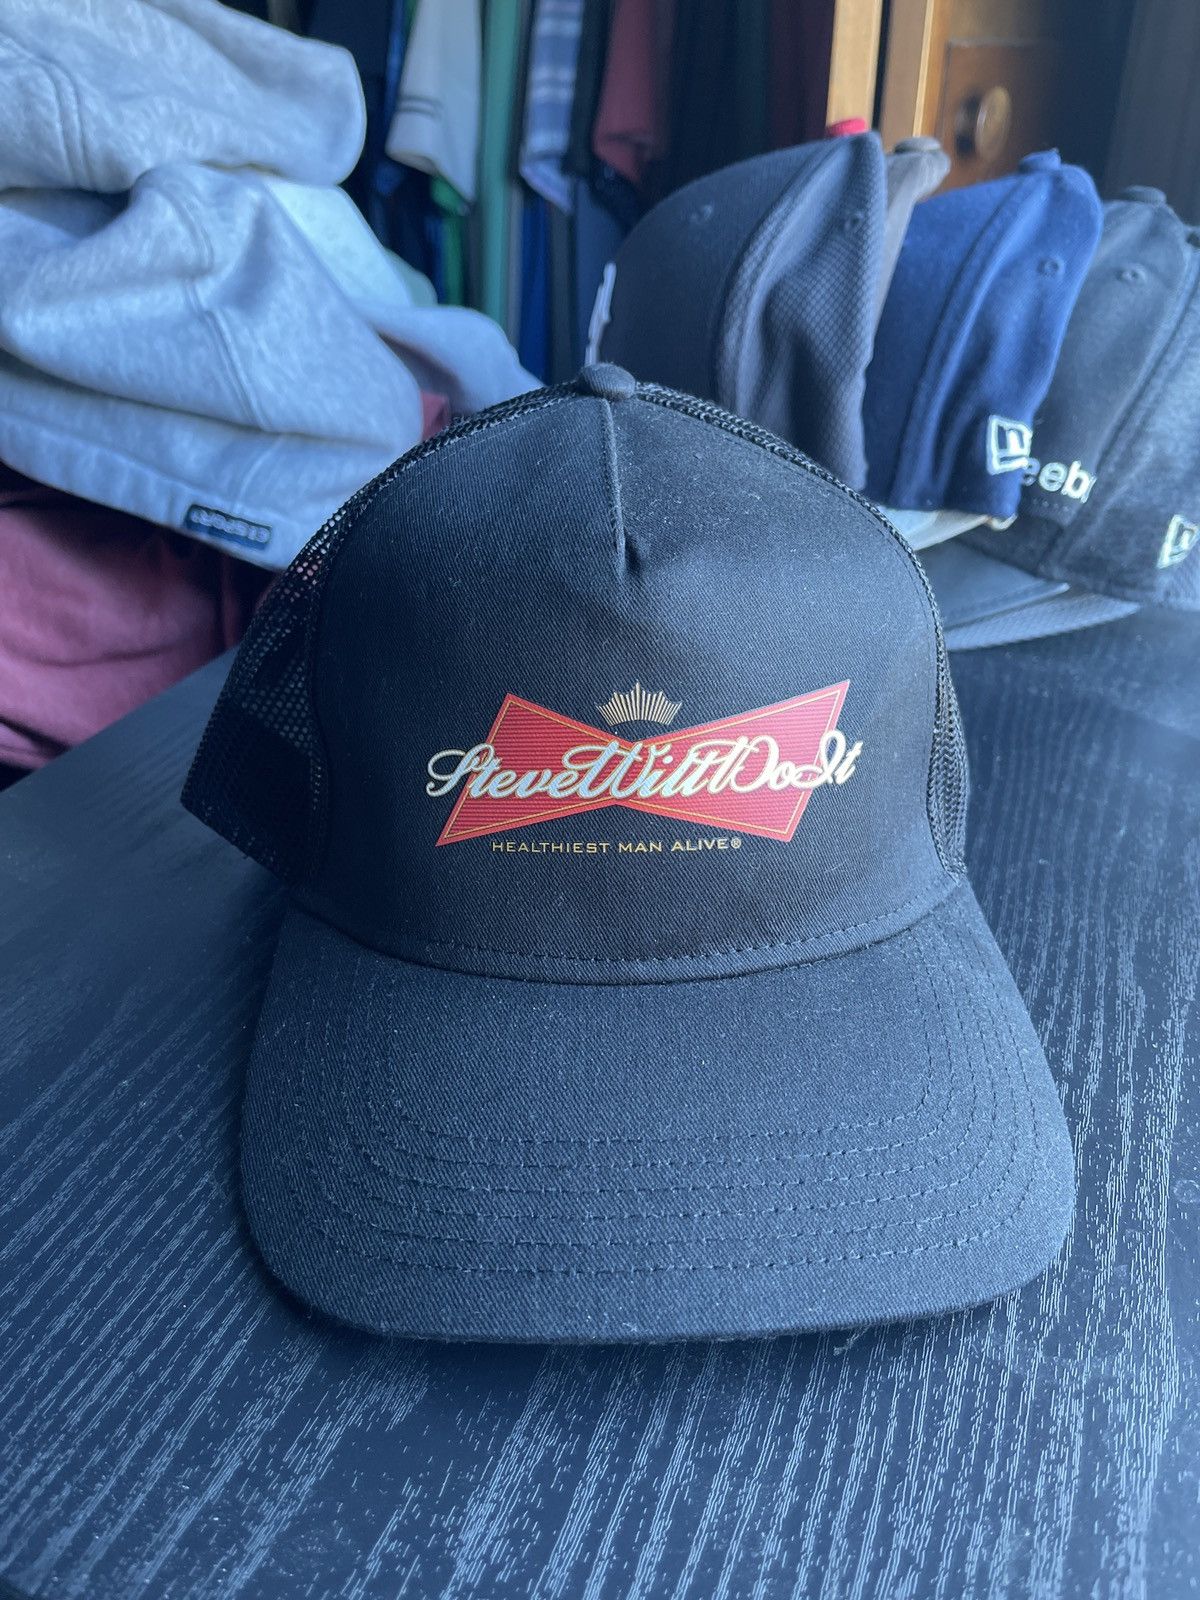 Full Send by Nelk Boys Full Send SteveWillDoIt Budweiser Hat | Grailed